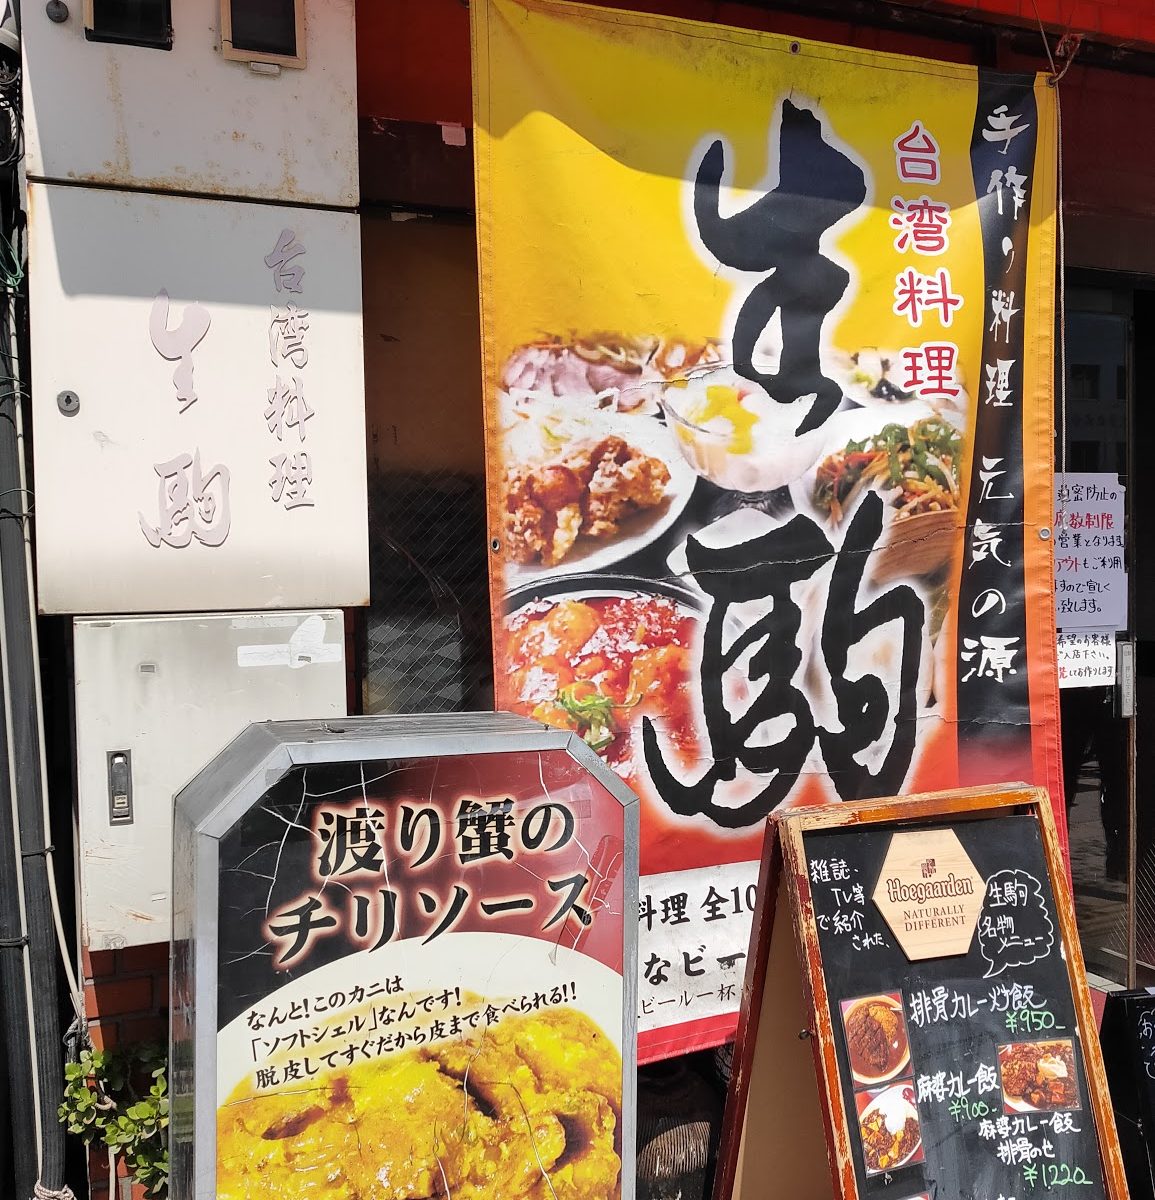 巣ごもりランチに最適 錦糸町徒歩圏で超人気の台湾料理店 生駒 でテイクアウト お勧めです 東京スカイツリーのふもとから